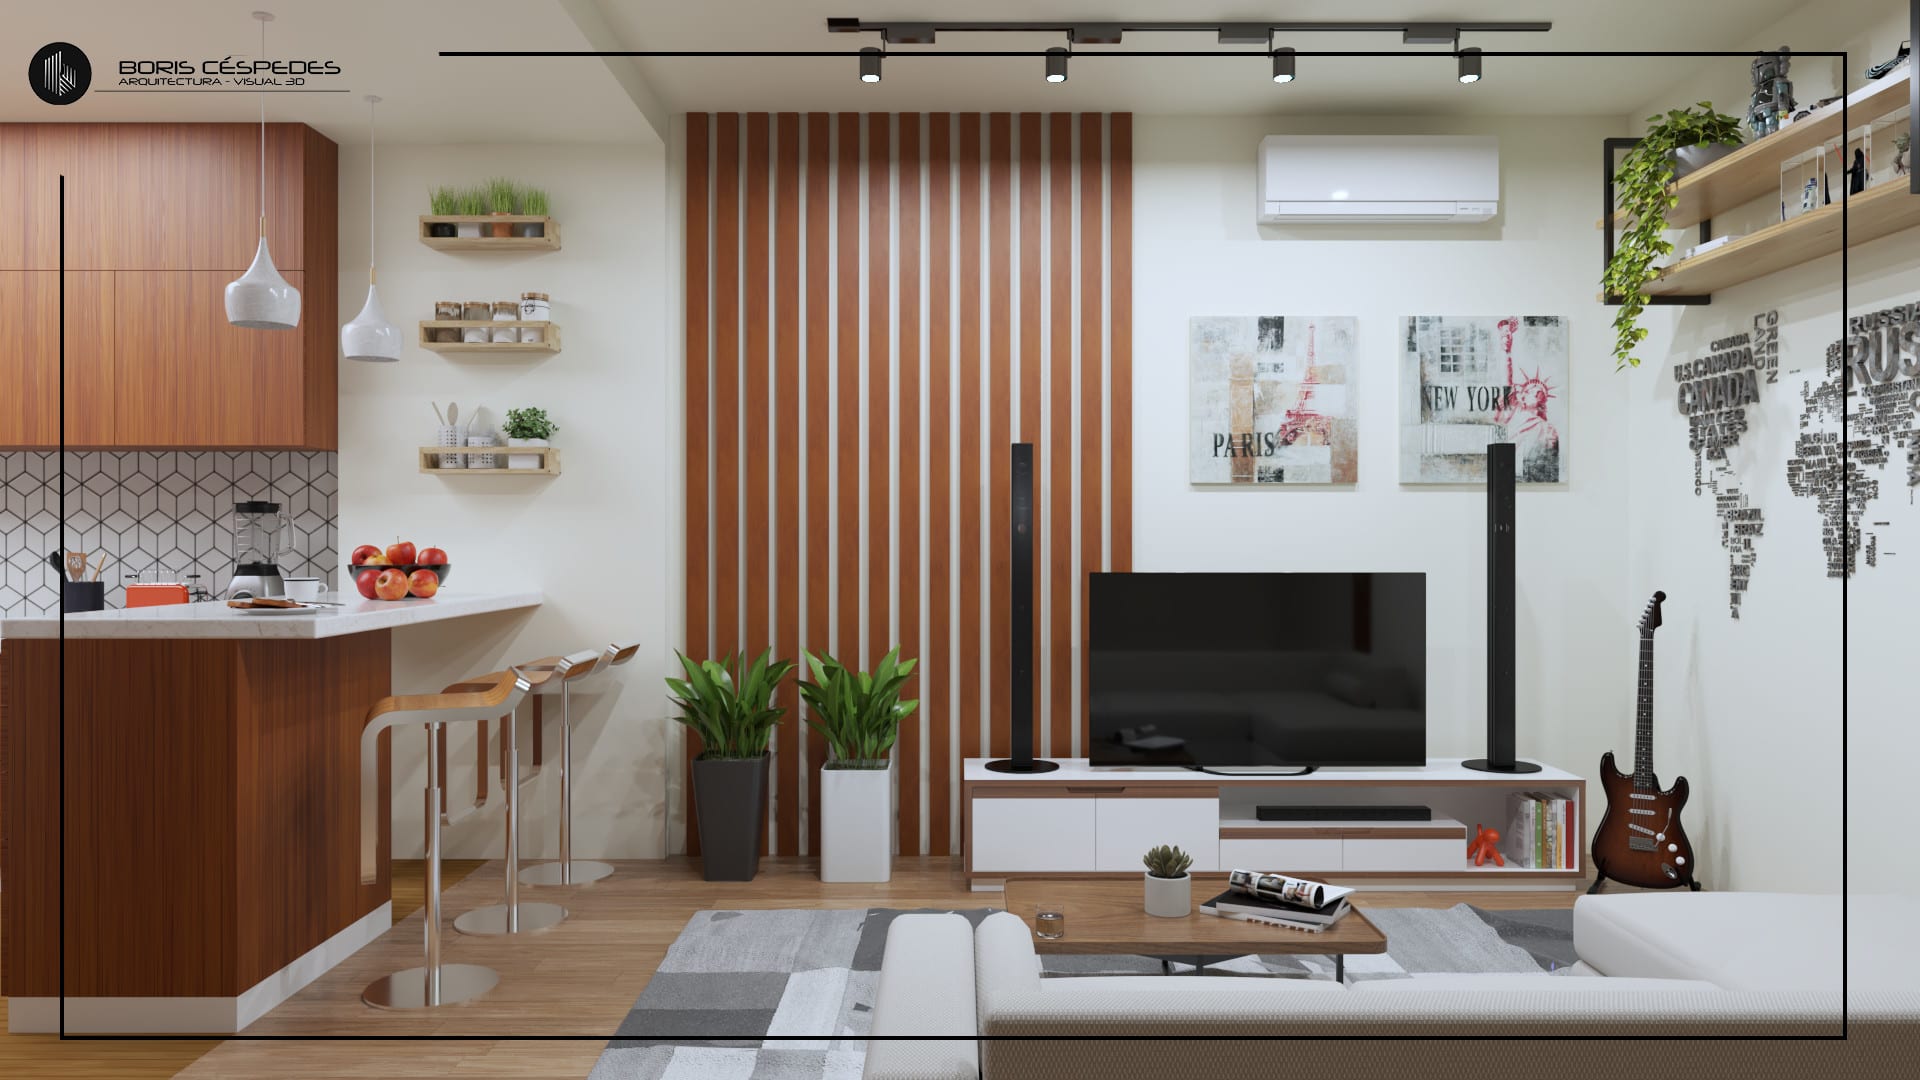 Hacer un modelo 3d y renderizado de un espacio interior by Boriscespedes |  Fiverr